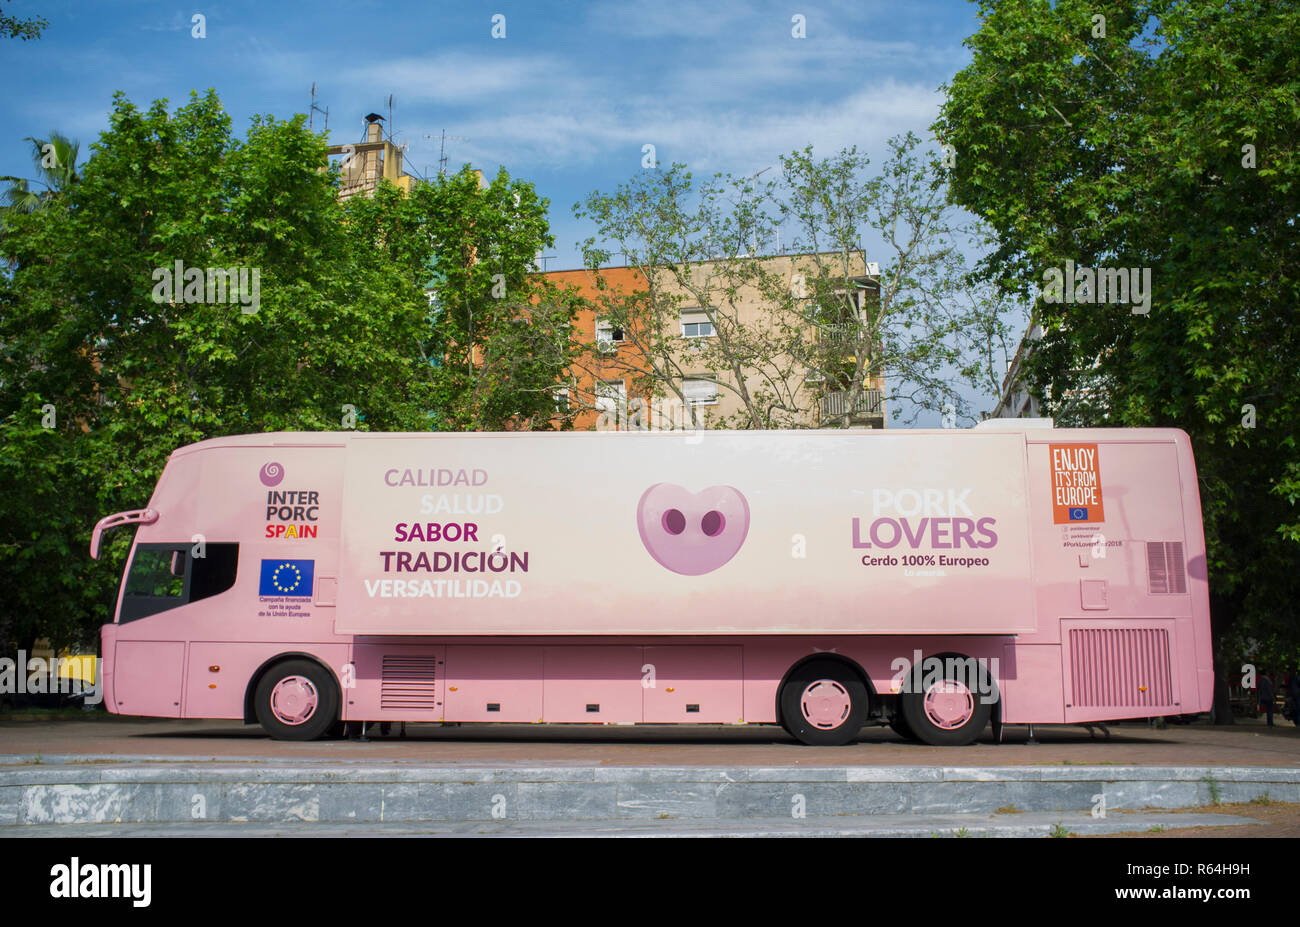 Badajoz, Spanien - Mai 23th, 2018: Schweinefleisch Liebhaber Tour Bus in der Stadt geparkt. Interporc Organisation Medien Kampagne Stockfoto